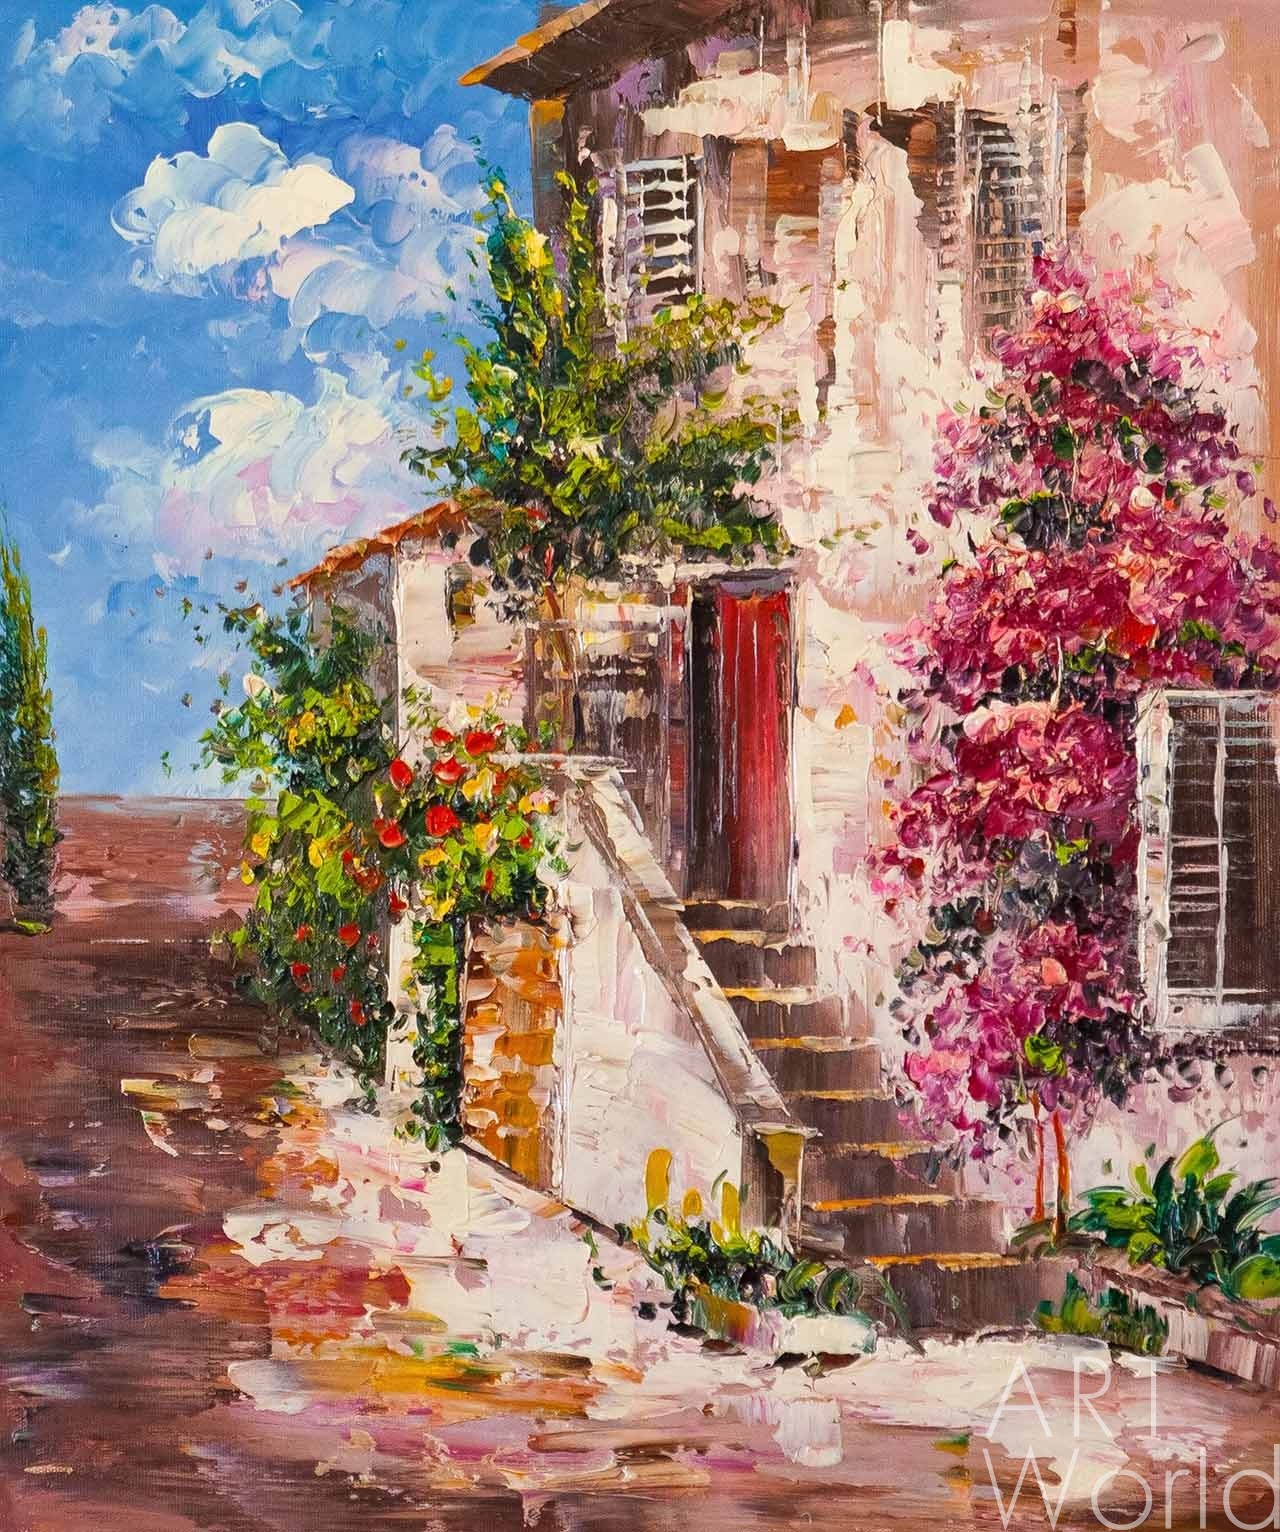 картина масло холст Средиземноморский пейзаж маслом "Цветущий дворик N2", Гомеш Лия, LegacyArt